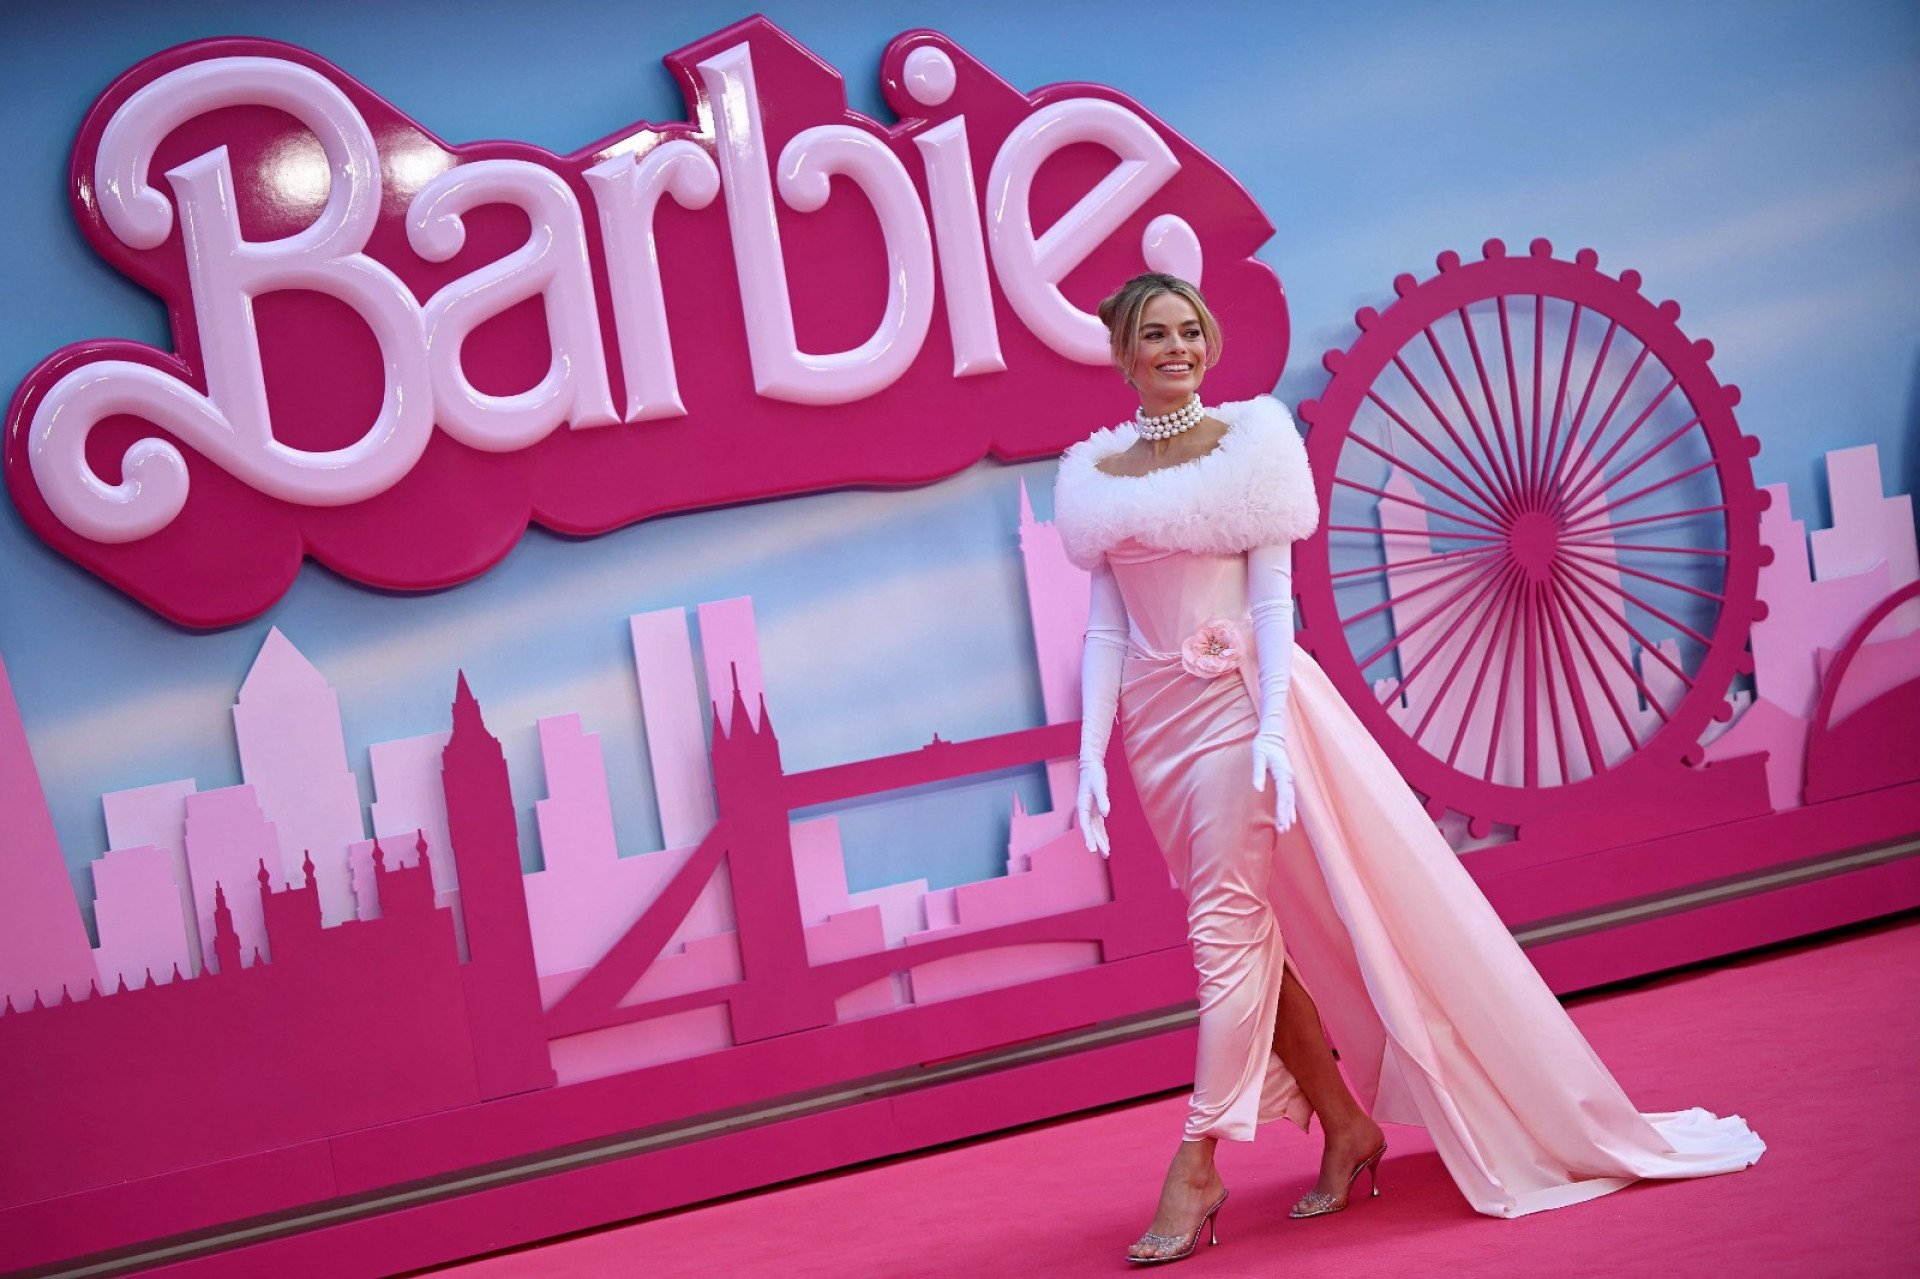 Voces conheciam essa traducao? 😳 #barbie #barbiegirl #barbiemovie #mu